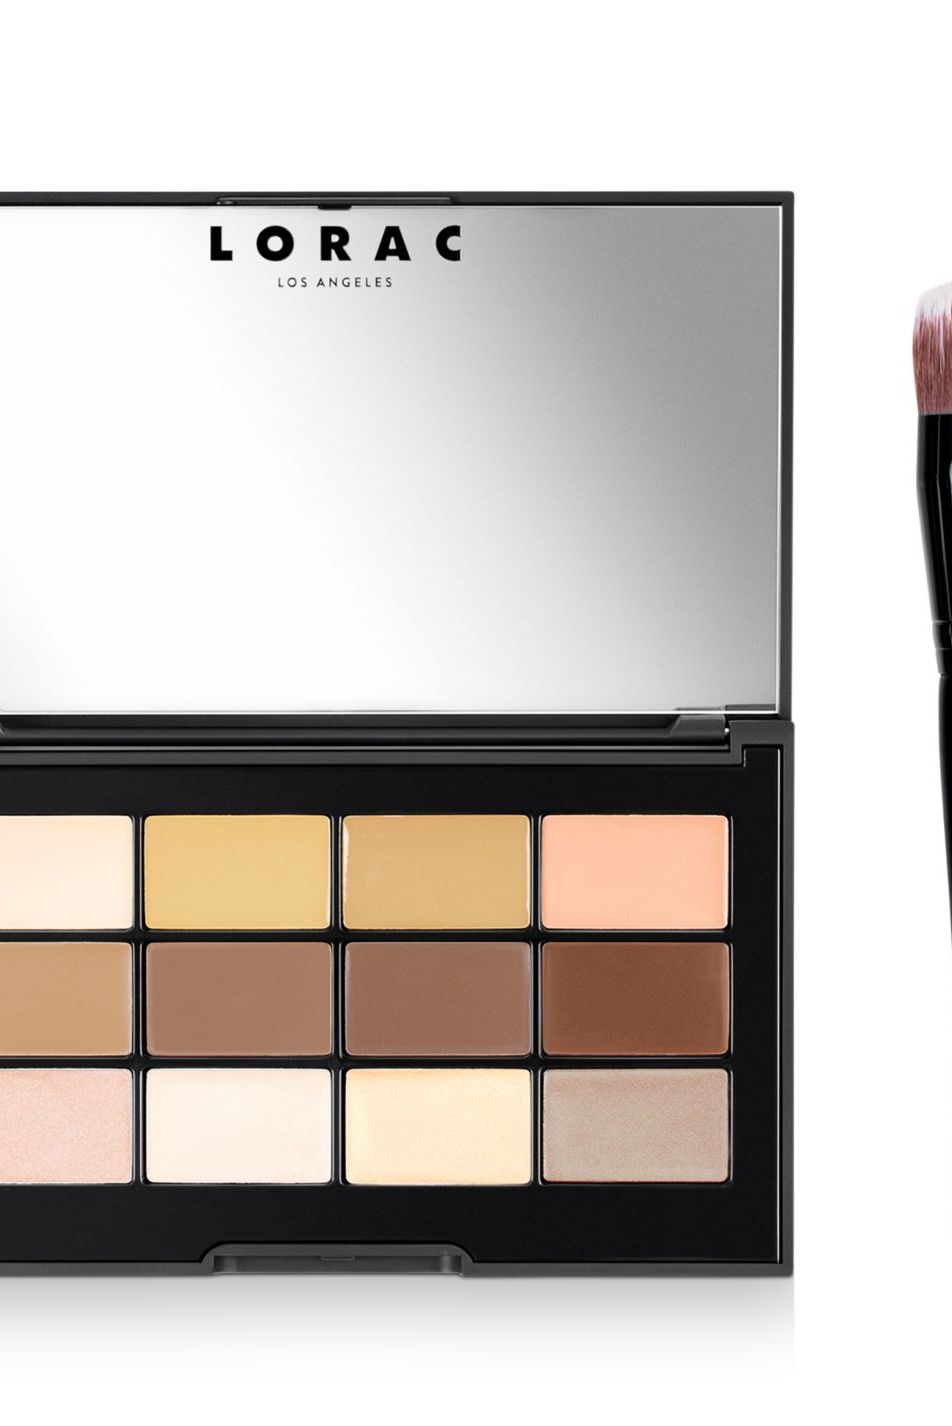 Lorac PRO Conceal/Contour Palette & Brush